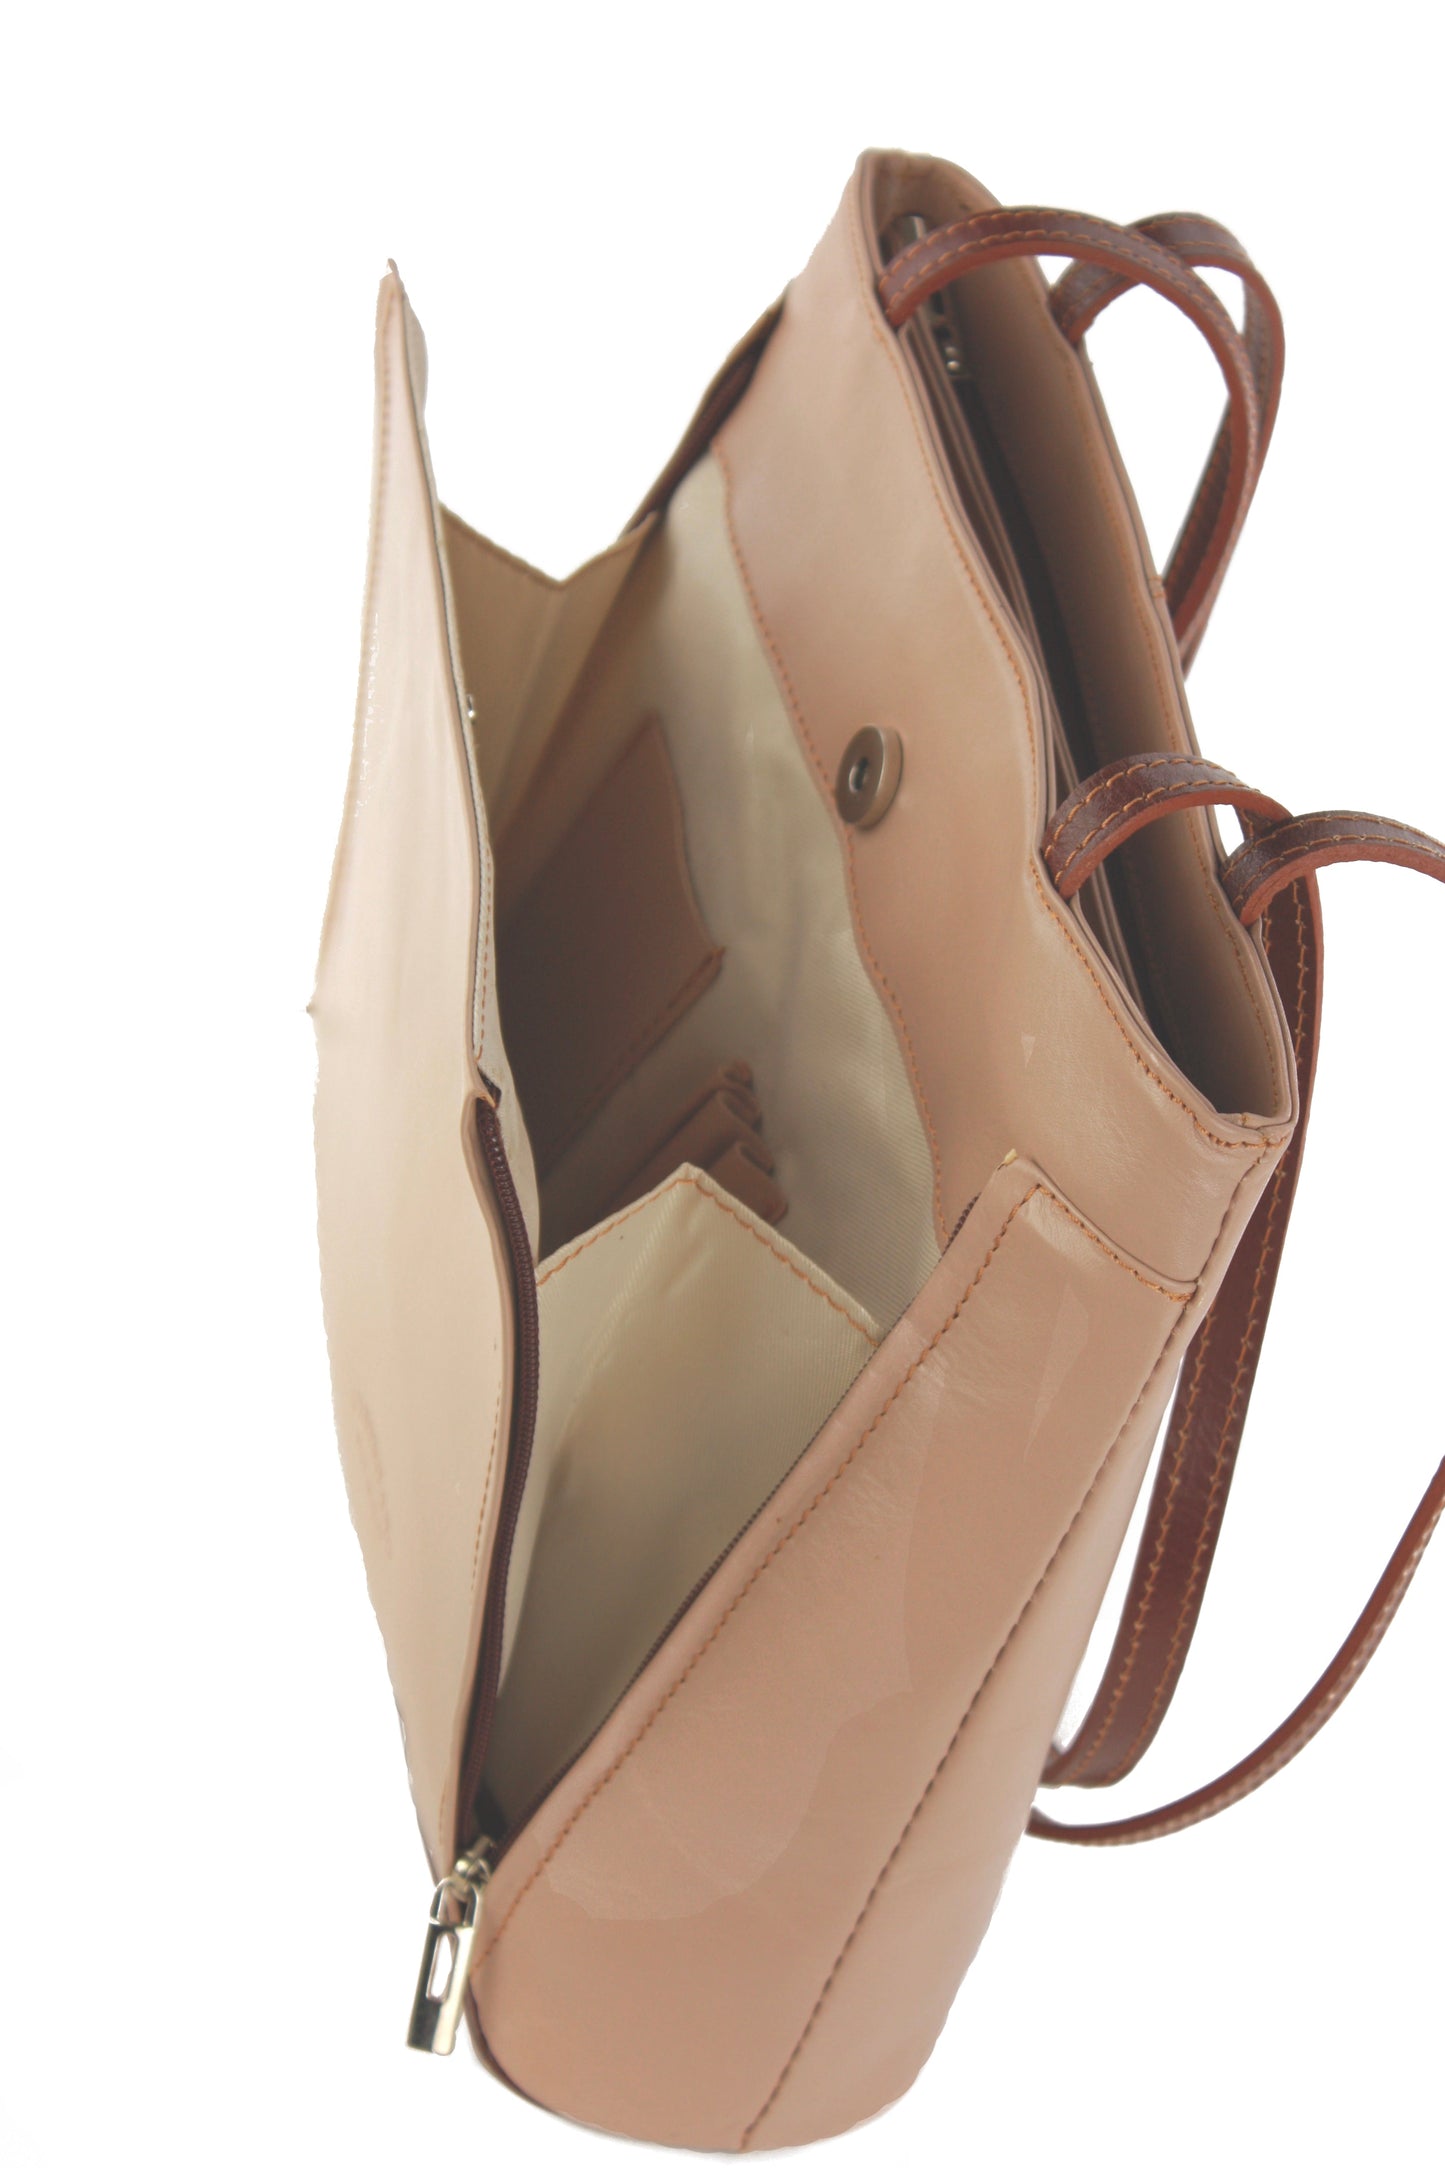 Ludovica handbag in tan